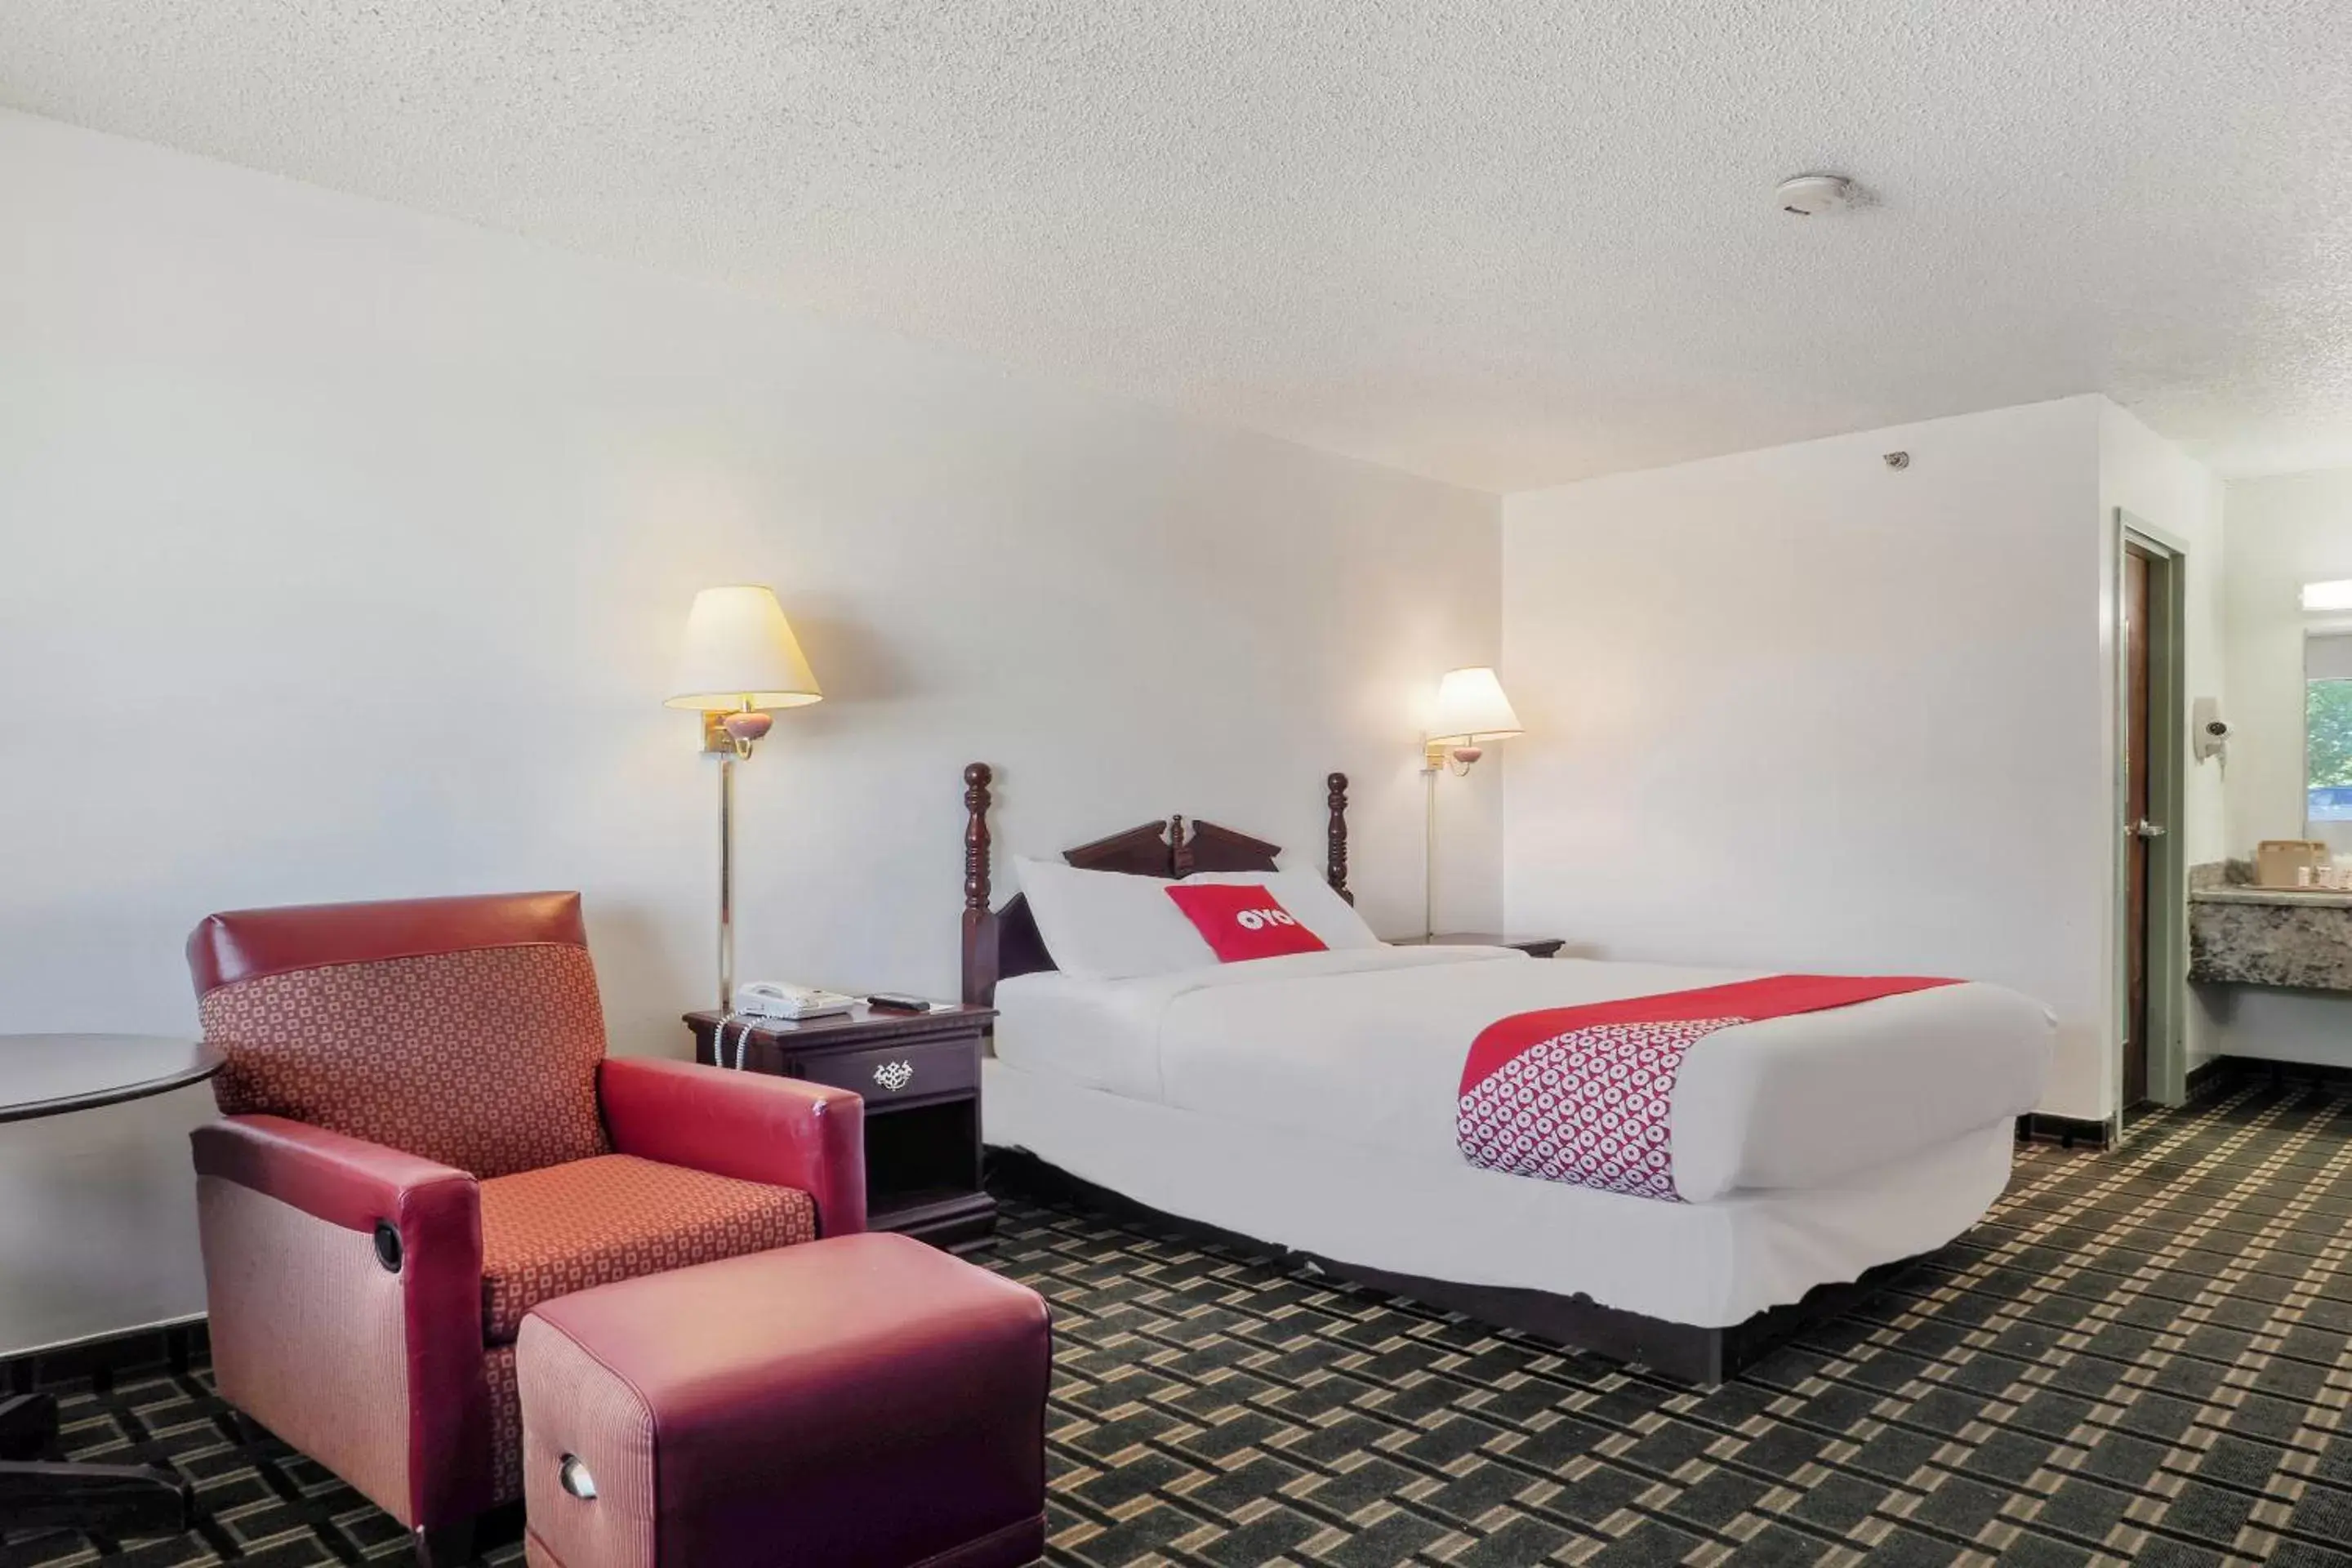 Bedroom, Bed in Lonestar Inn & Suites, Erick OK Hwy 40 BY OYO